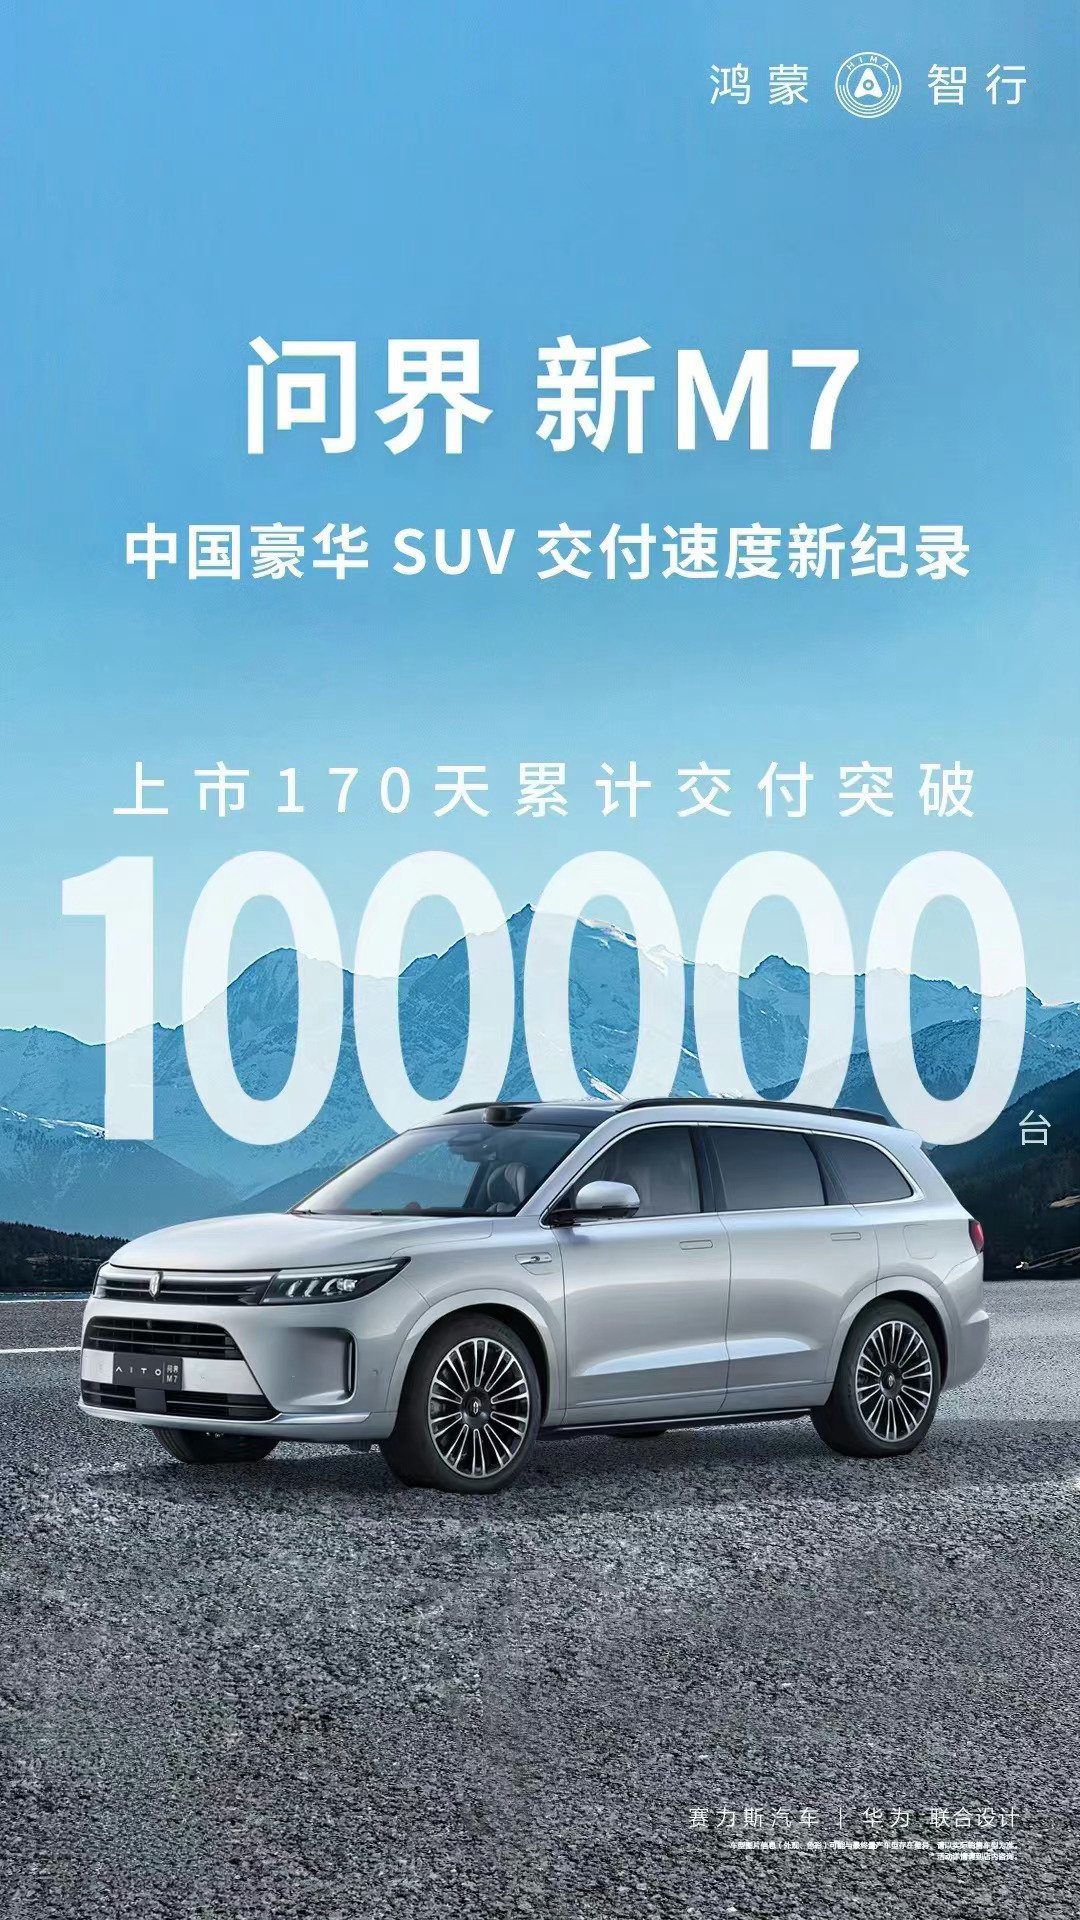 【爱车基地】AITO 问界新 M7 车型上市 170 天累计交付超 10 万台-第0张